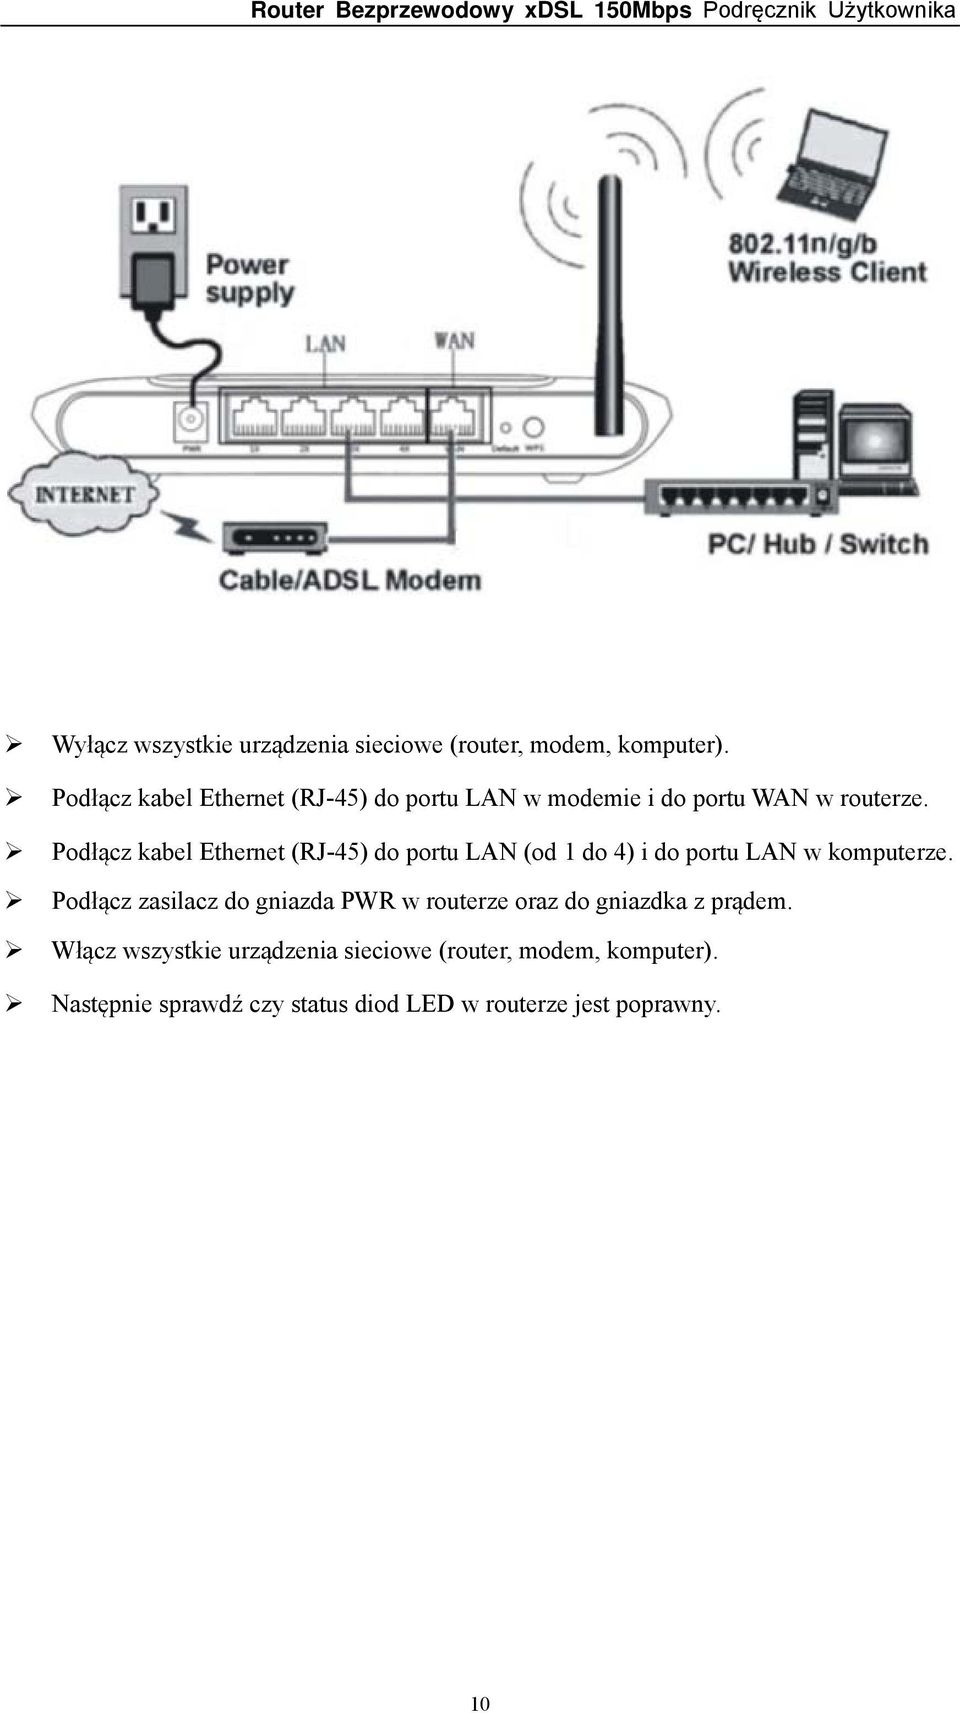 Podłącz kabel Ethernet (RJ-45) do portu LAN (od 1 do 4) i do portu LAN w komputerze.